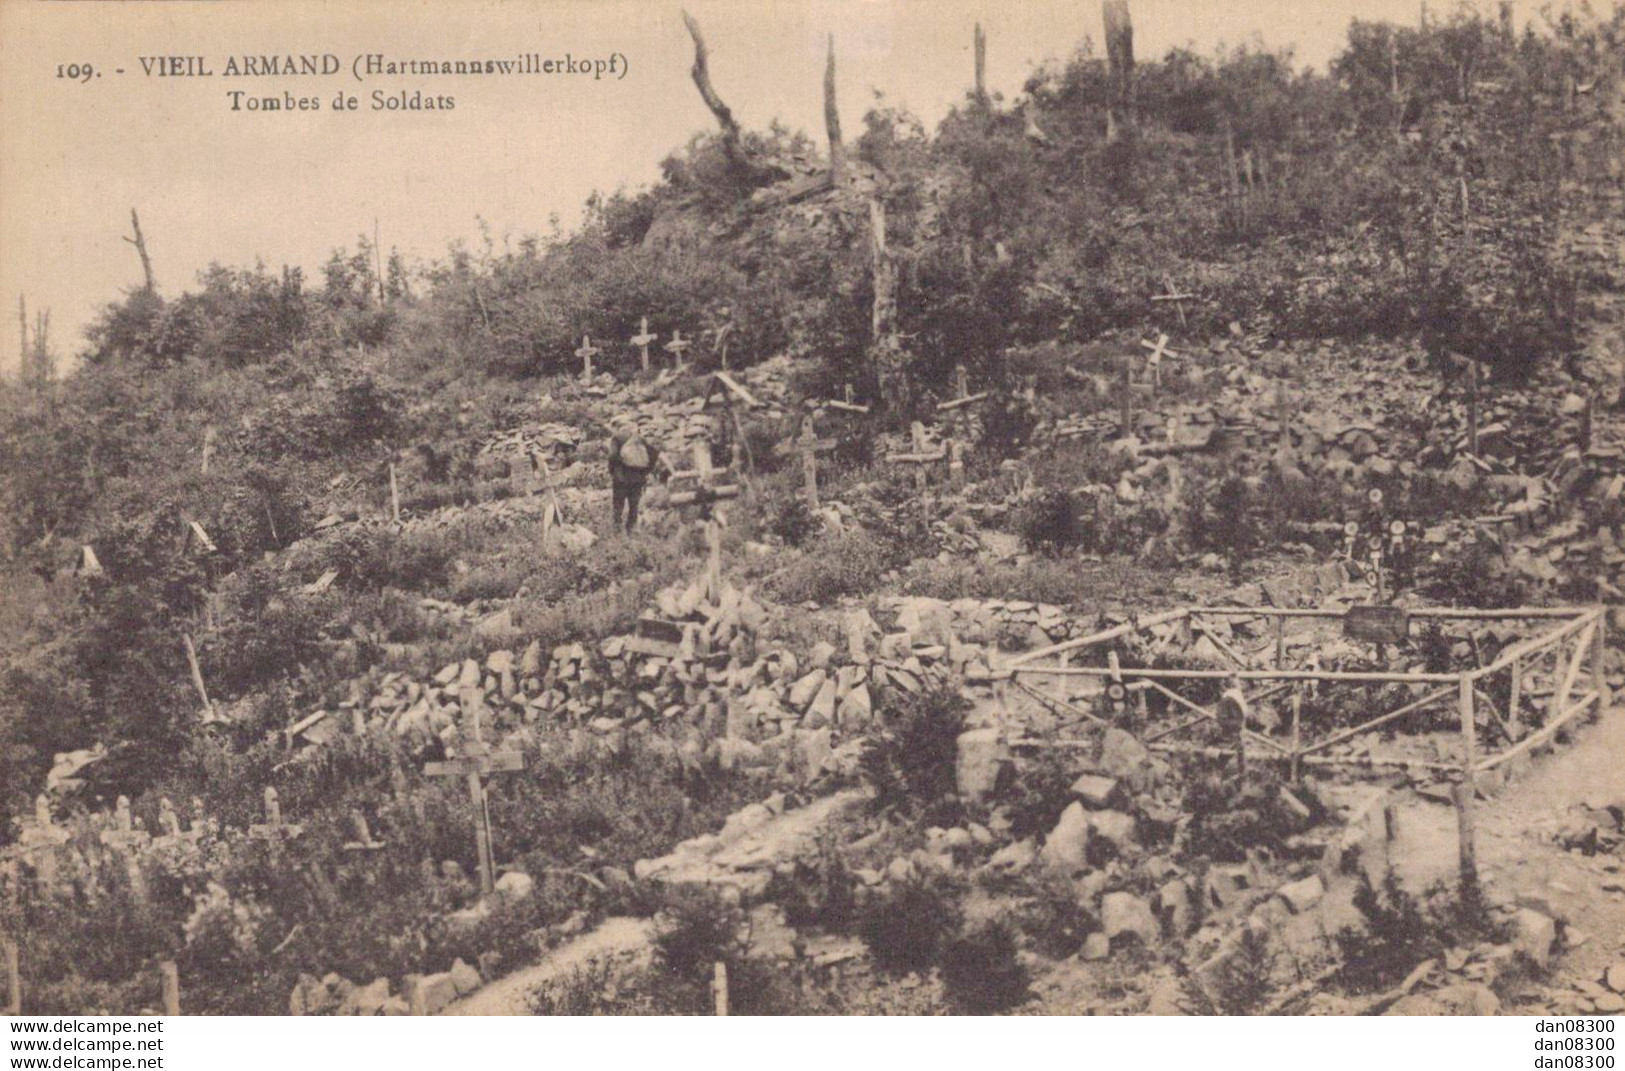 67 VIEIL ARMAND TOMBES DE SOLDATS - Cementerios De Los Caídos De Guerra